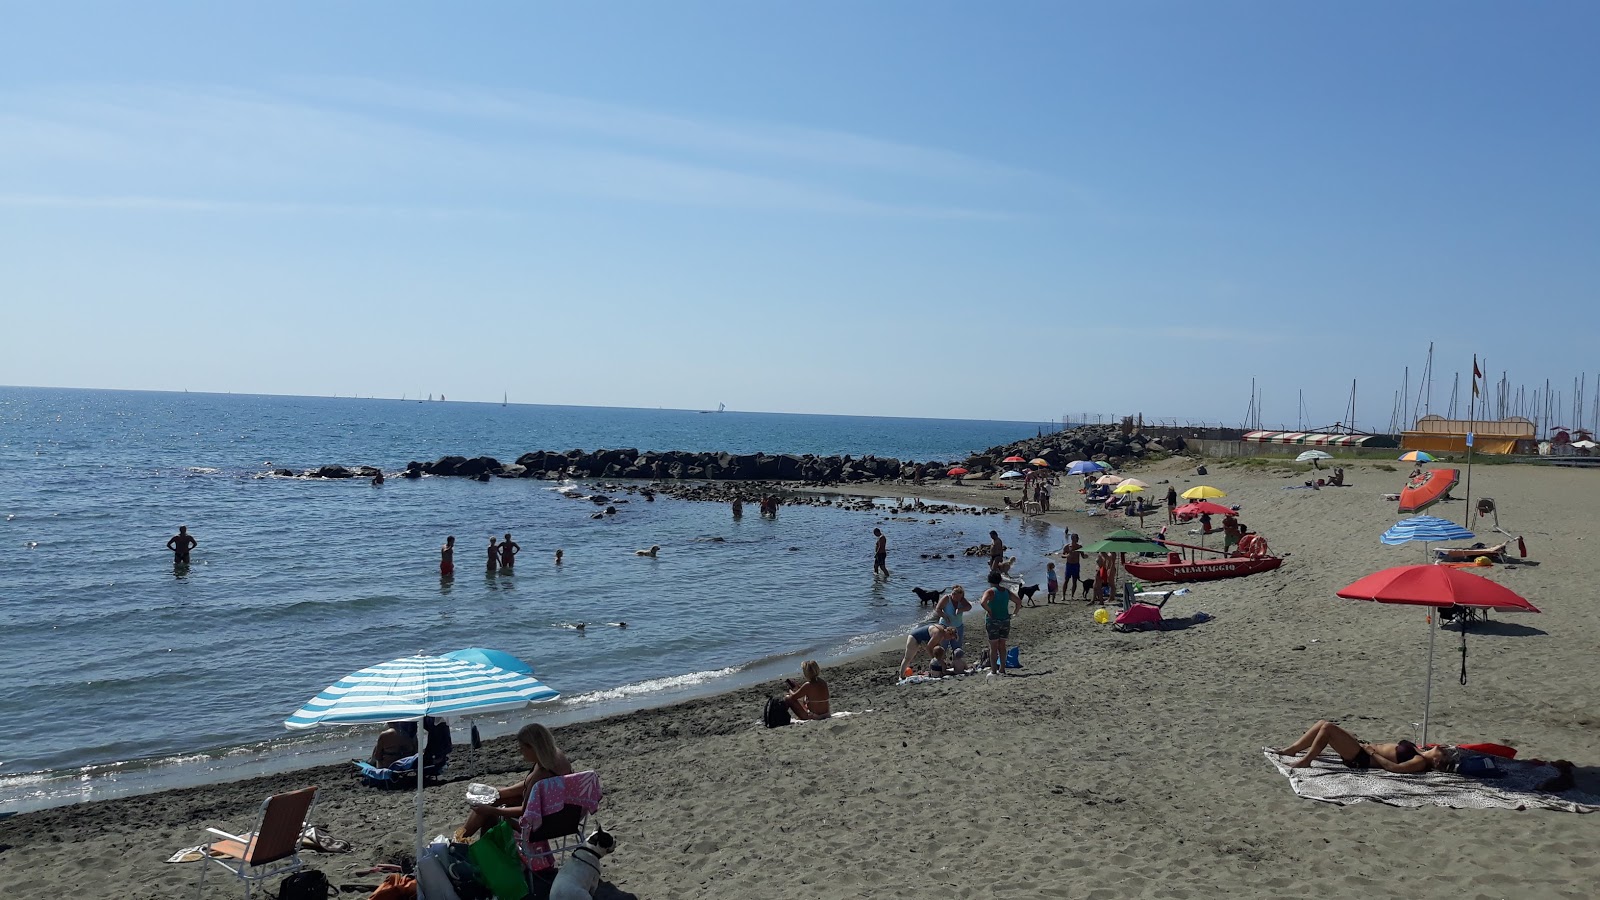 Foto von Ostiia beach II mit blaues wasser Oberfläche